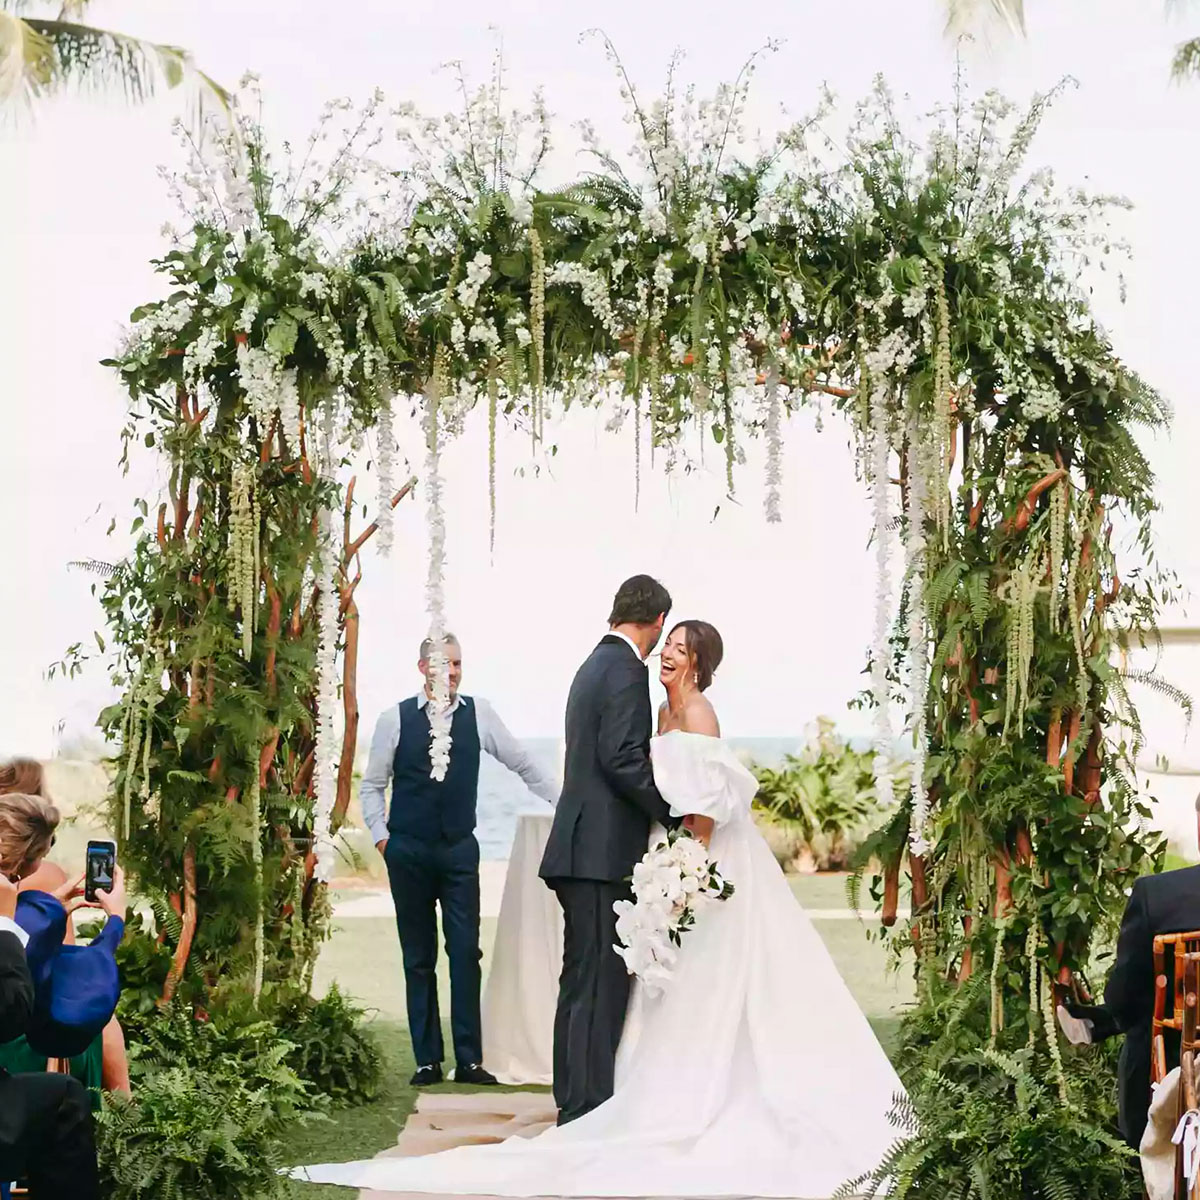 Wedding arch garlands by Adriana Rivera on Thursd